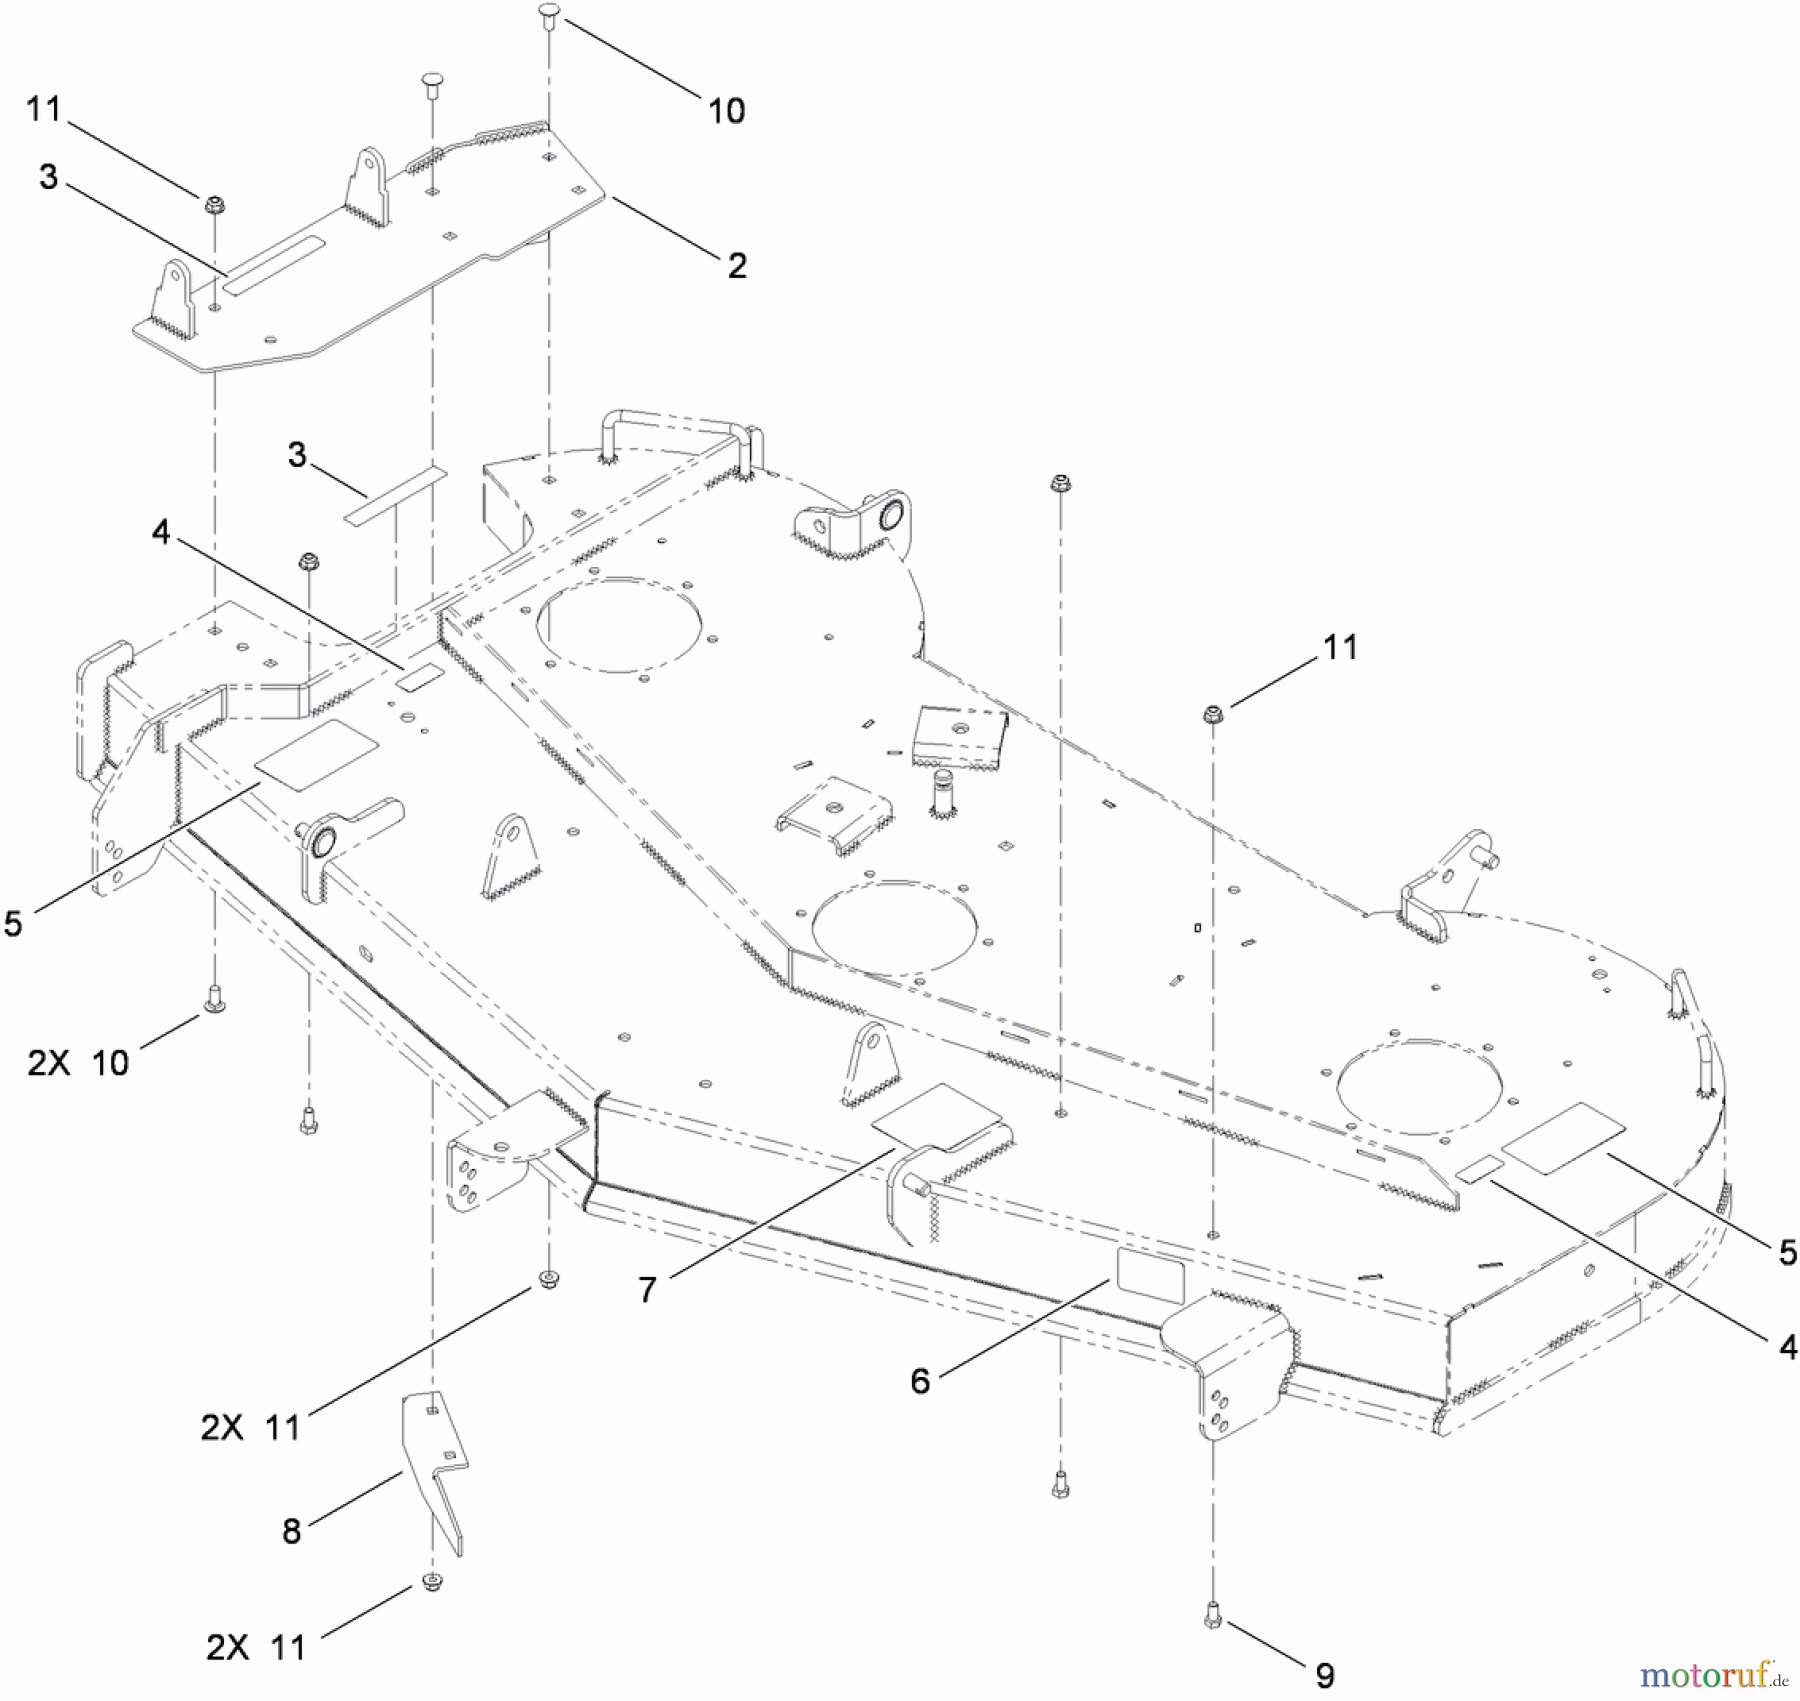  Toro Neu Mowers, Zero-Turn 74833 (ZX6030) - Toro TITAN ZX6030 Zero-Turn-Radius Riding Mower, 2010 (310000001-310999999) 60 INCH DECK AND DECAL ASSEMBLY